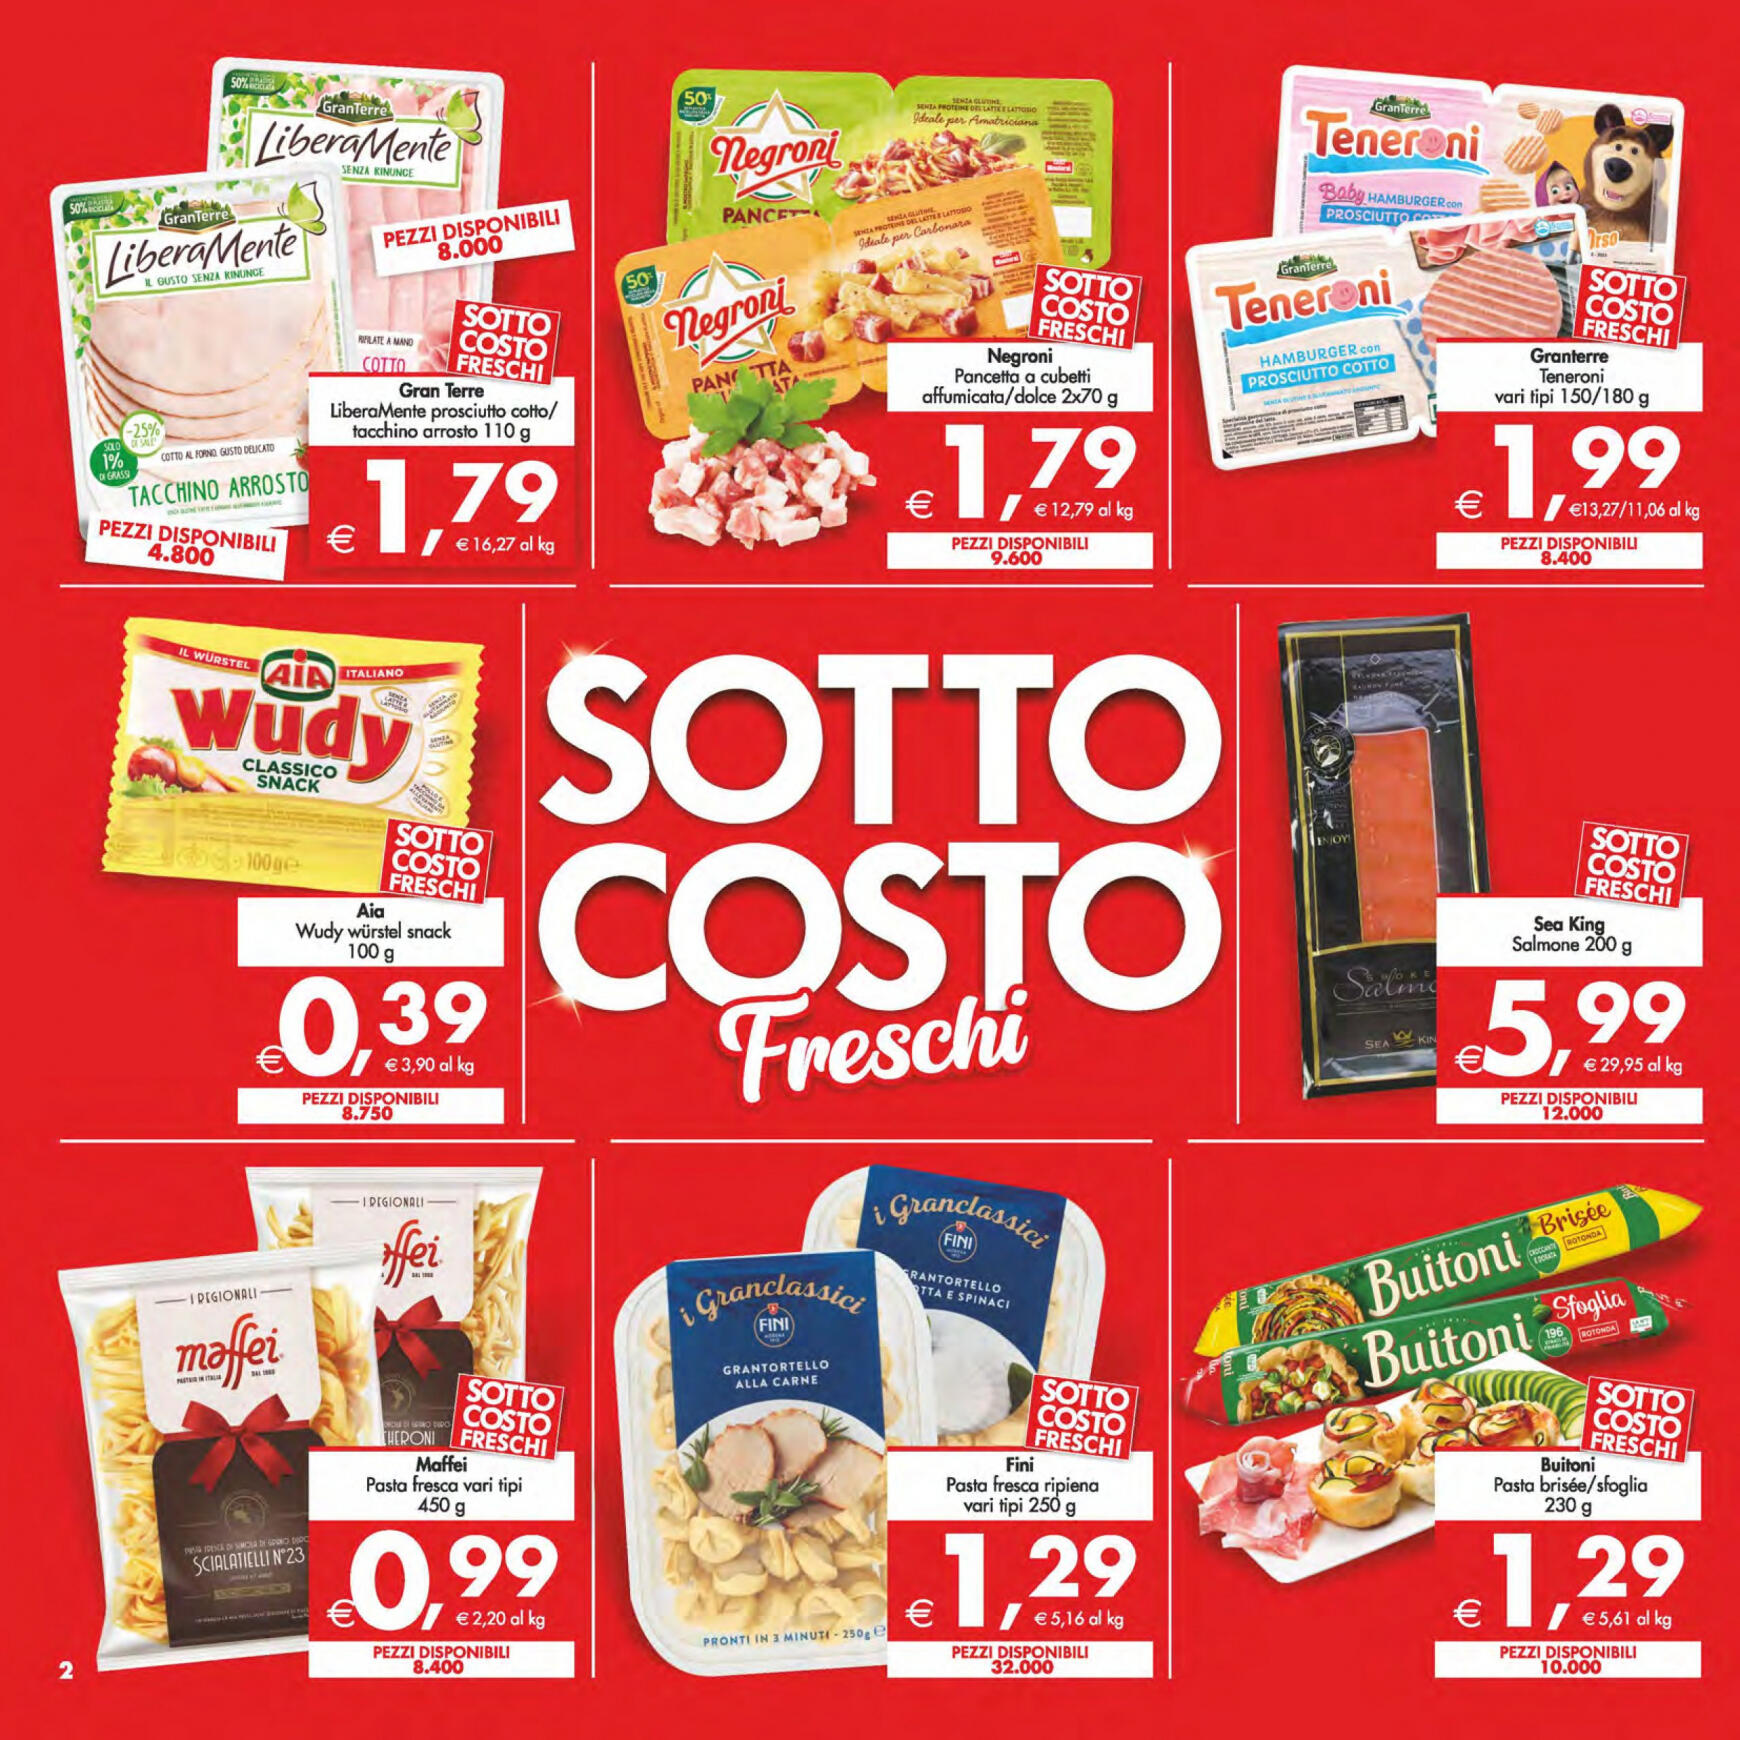 deco - Nuovo volantino Decò - Maxistore/Supermercati/Local 14.05. - 23.05. - page: 2